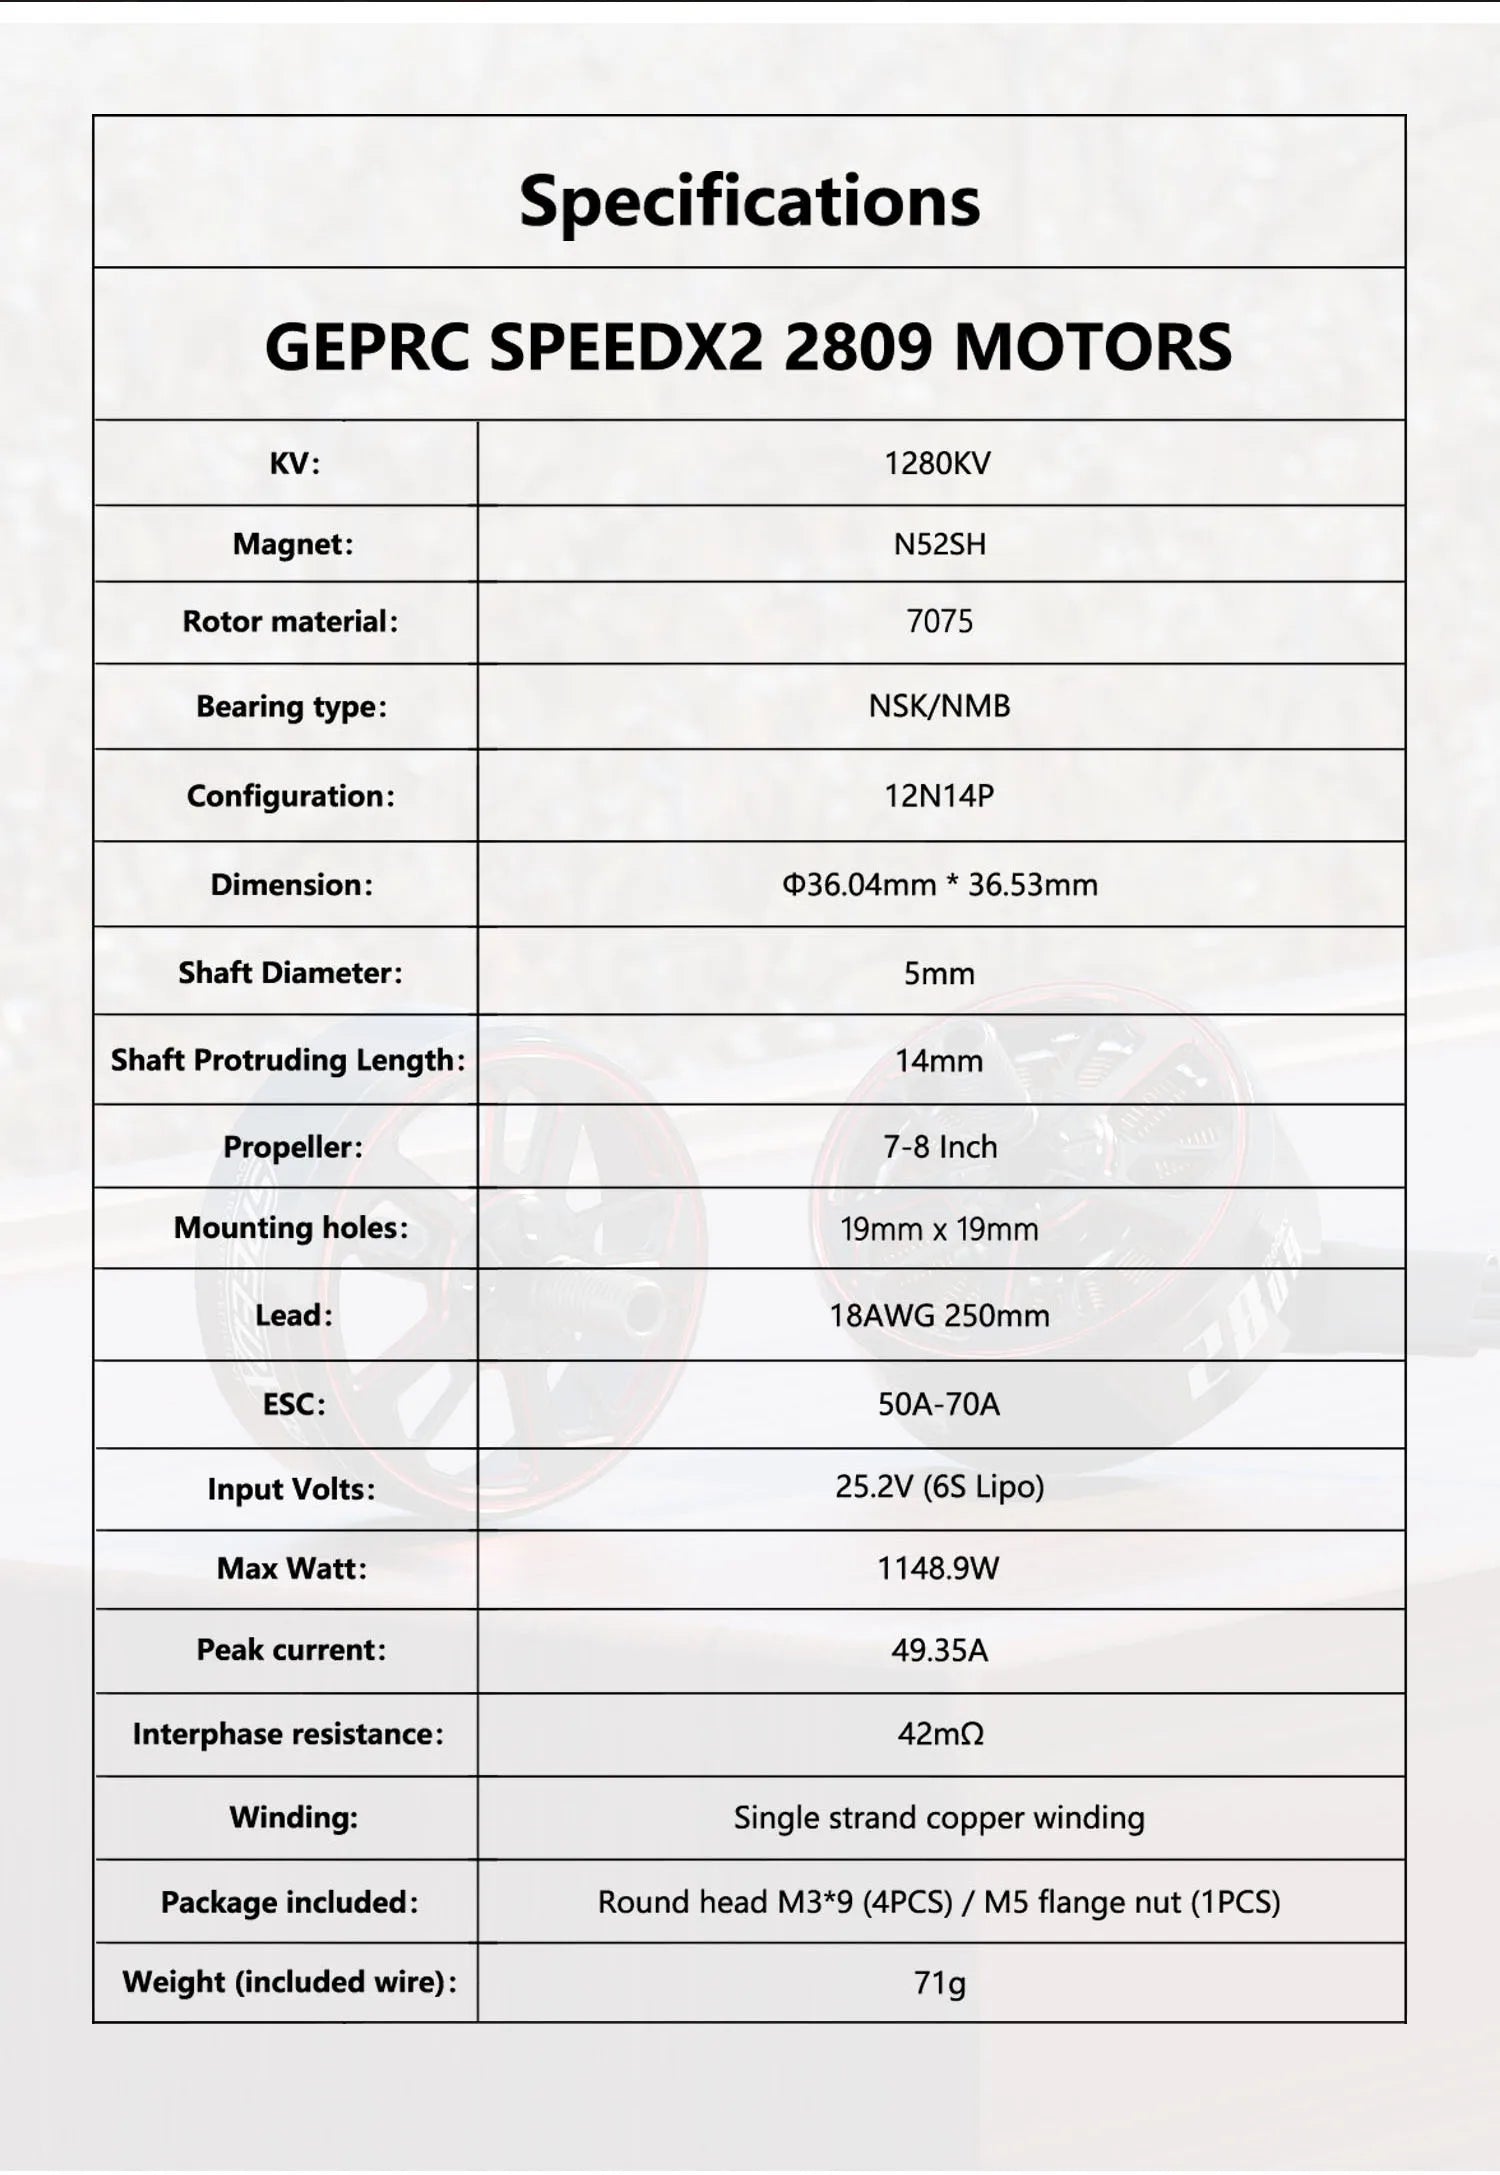 GEPRC SPEEDX2 2809 1280KV Motor, Specifications GEPRC SPEEDX2 2809 MOTORS KV: 12